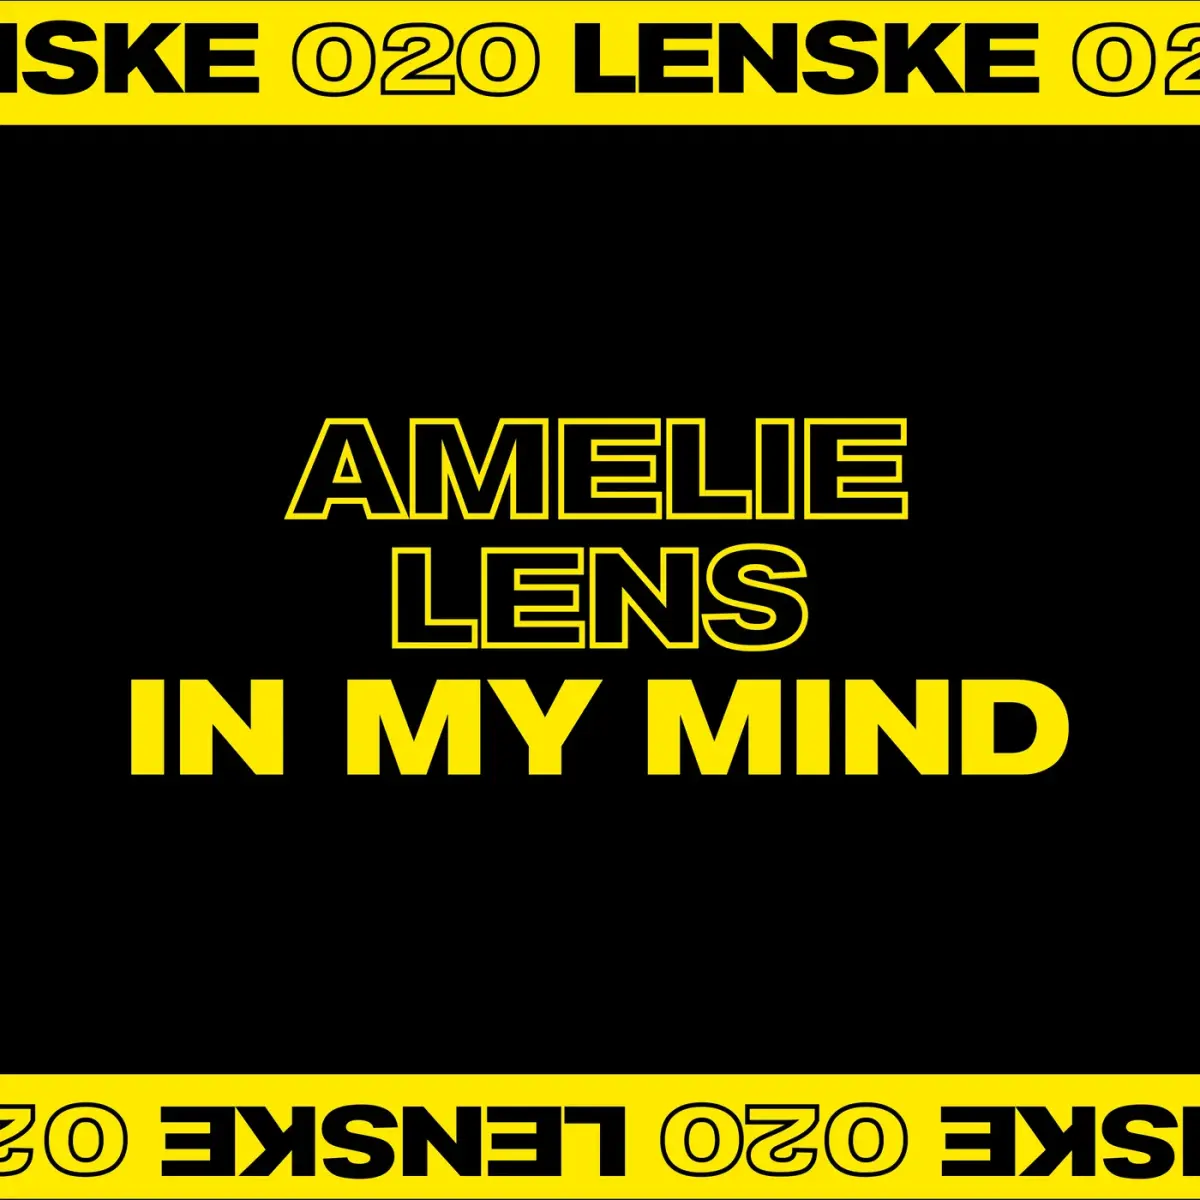 "IN MY MIND" - AMELIE LENS [LENSKE]